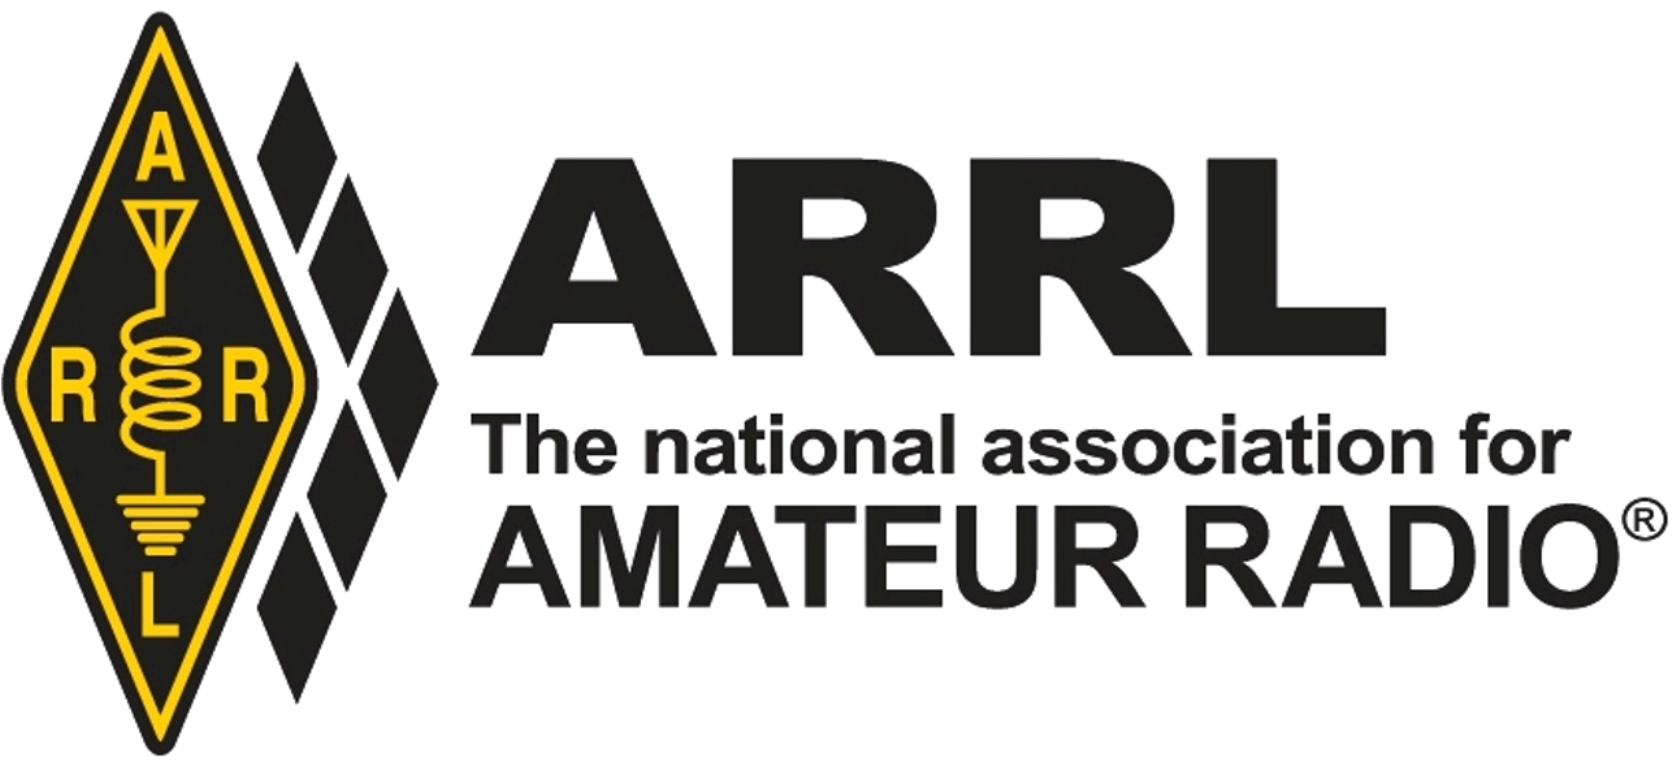 ARRL logo.